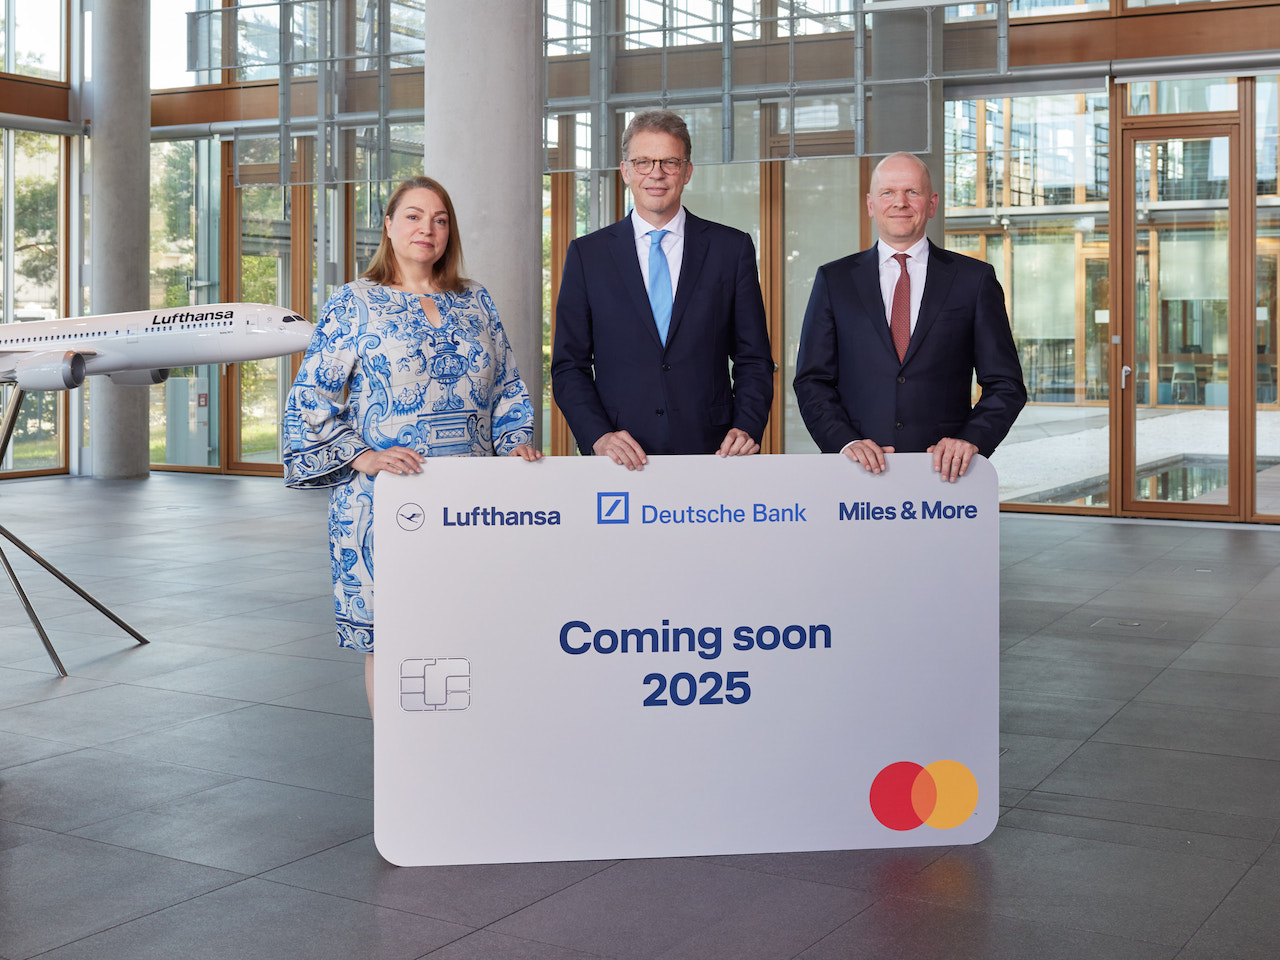 Neue Partnerschaft: Christina Foerster, Mitglied des Vorstandes der Deutschen Lufthansa AG, mit Christian Sewing, Vorstandsvorsitzender der Deutschen Bank, und Mastercard CEO Michael Miebach